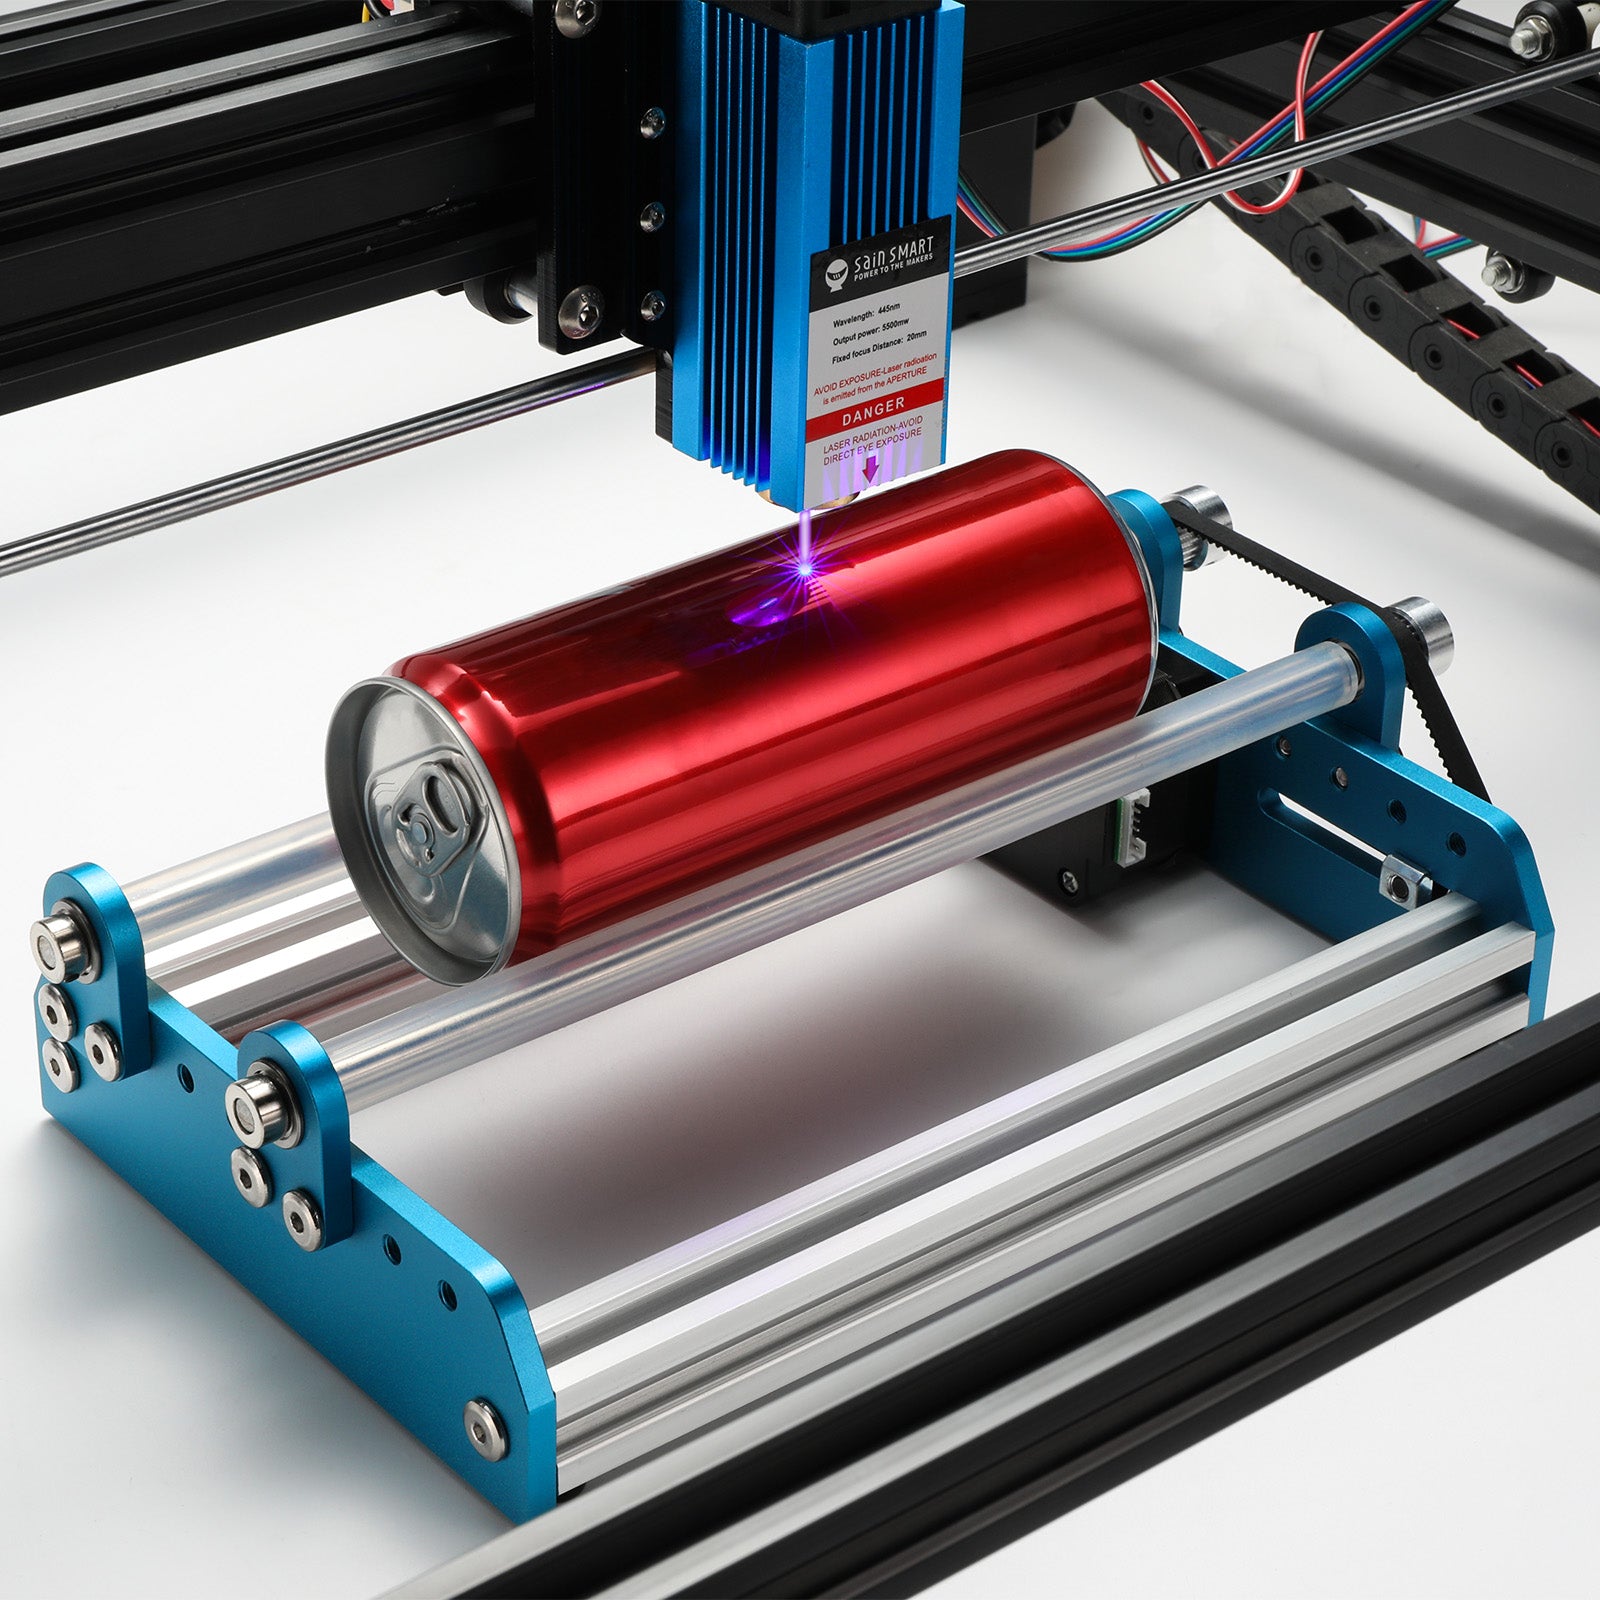 CV50 Laser Engraver Enclosure –